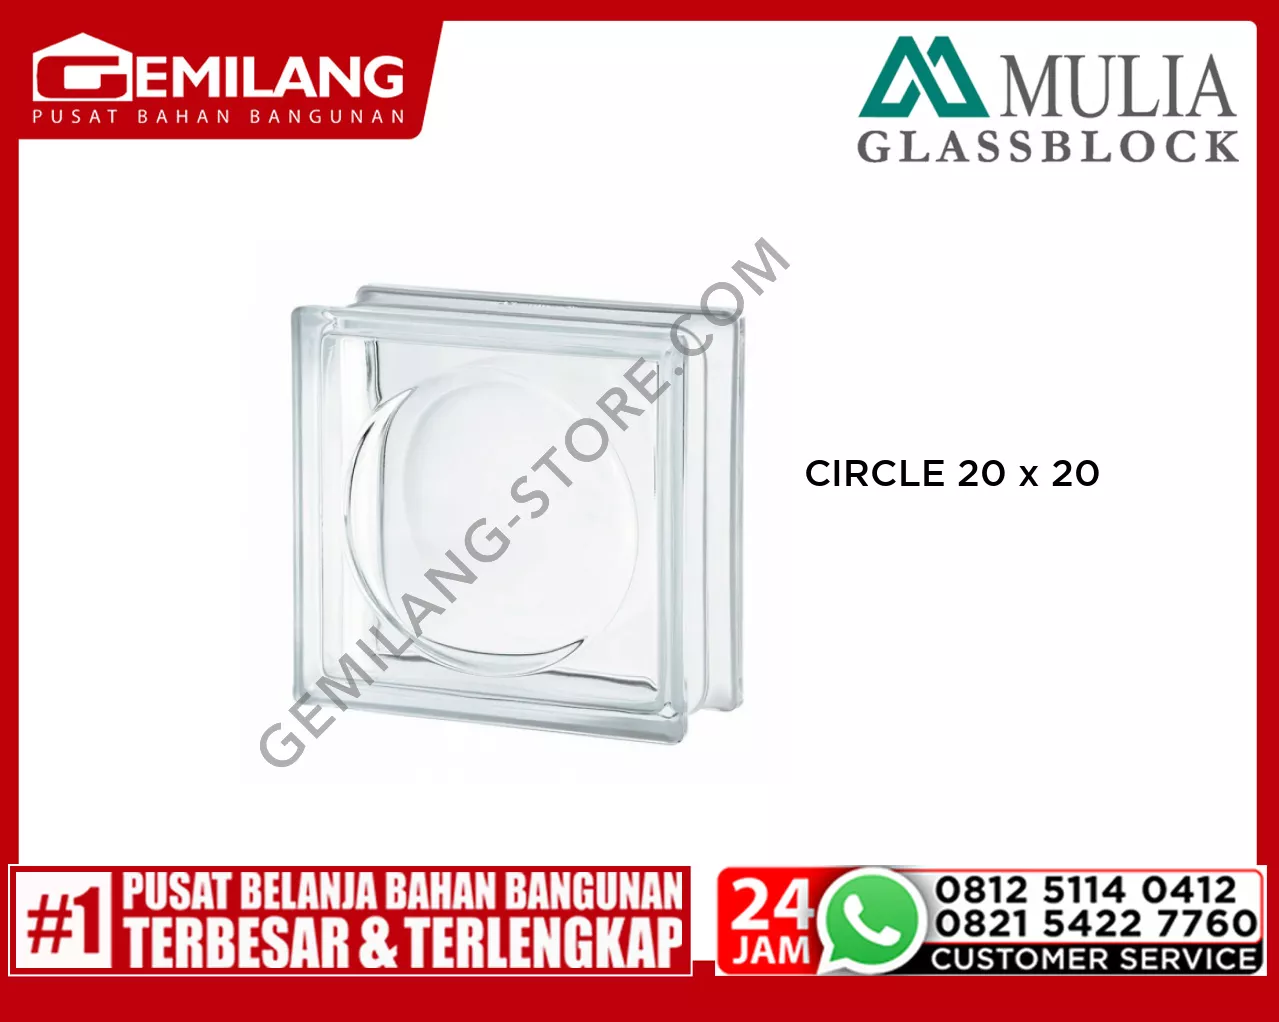 MULIA GLASS BLOCK CIRCLE 20 x 20